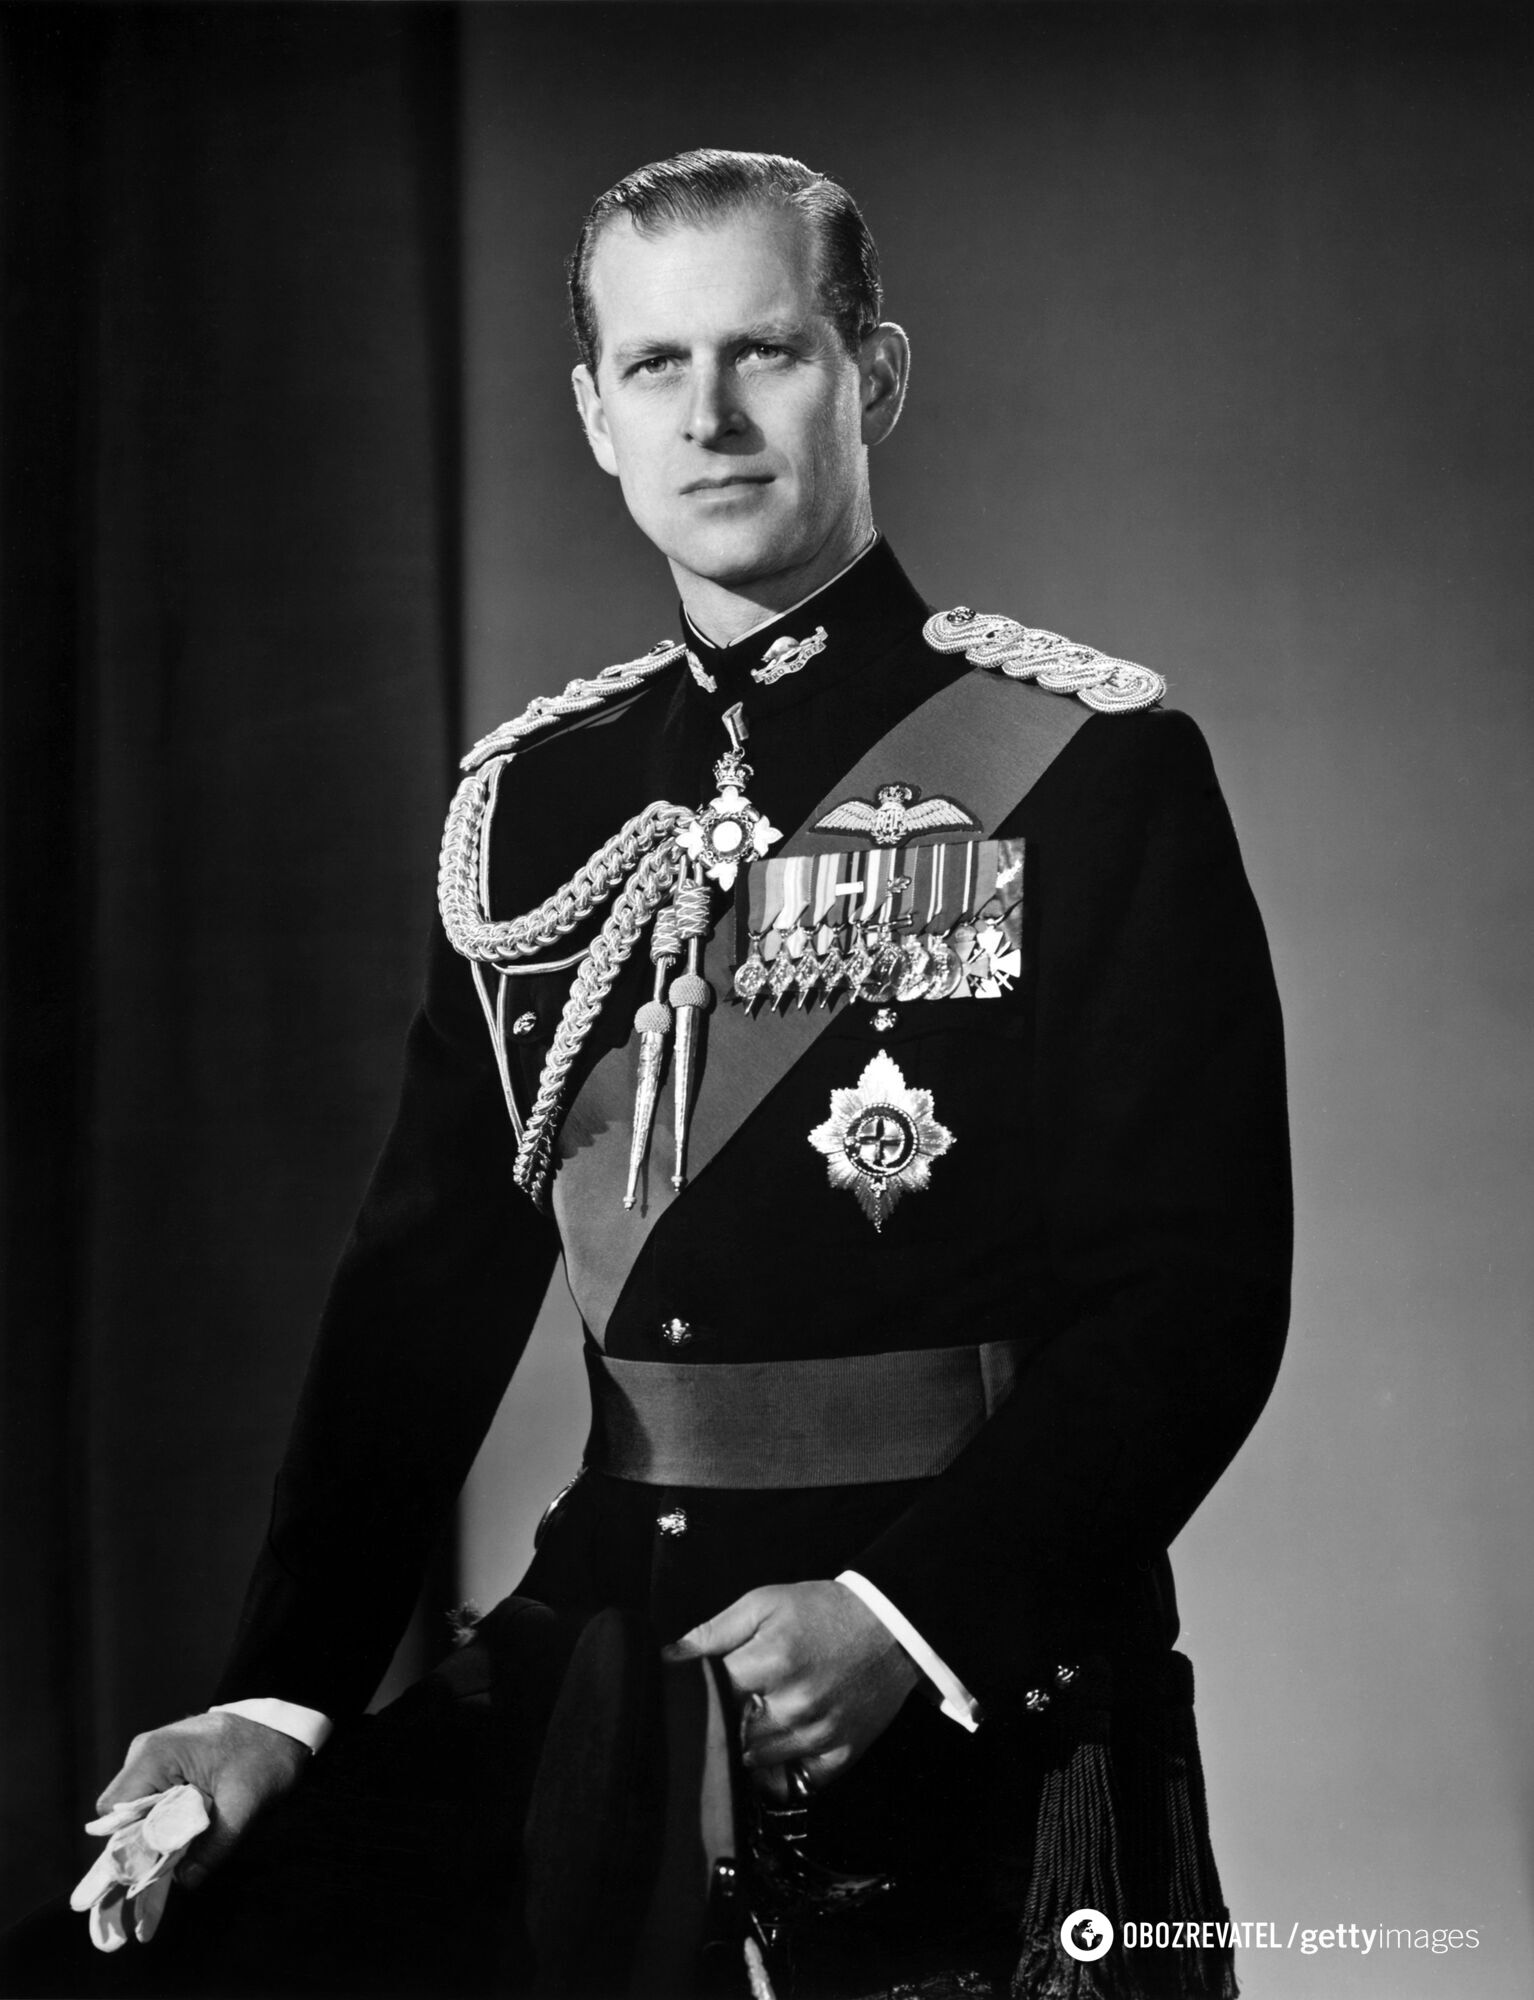 Принц Филипп участвовал во Второй мировой войне